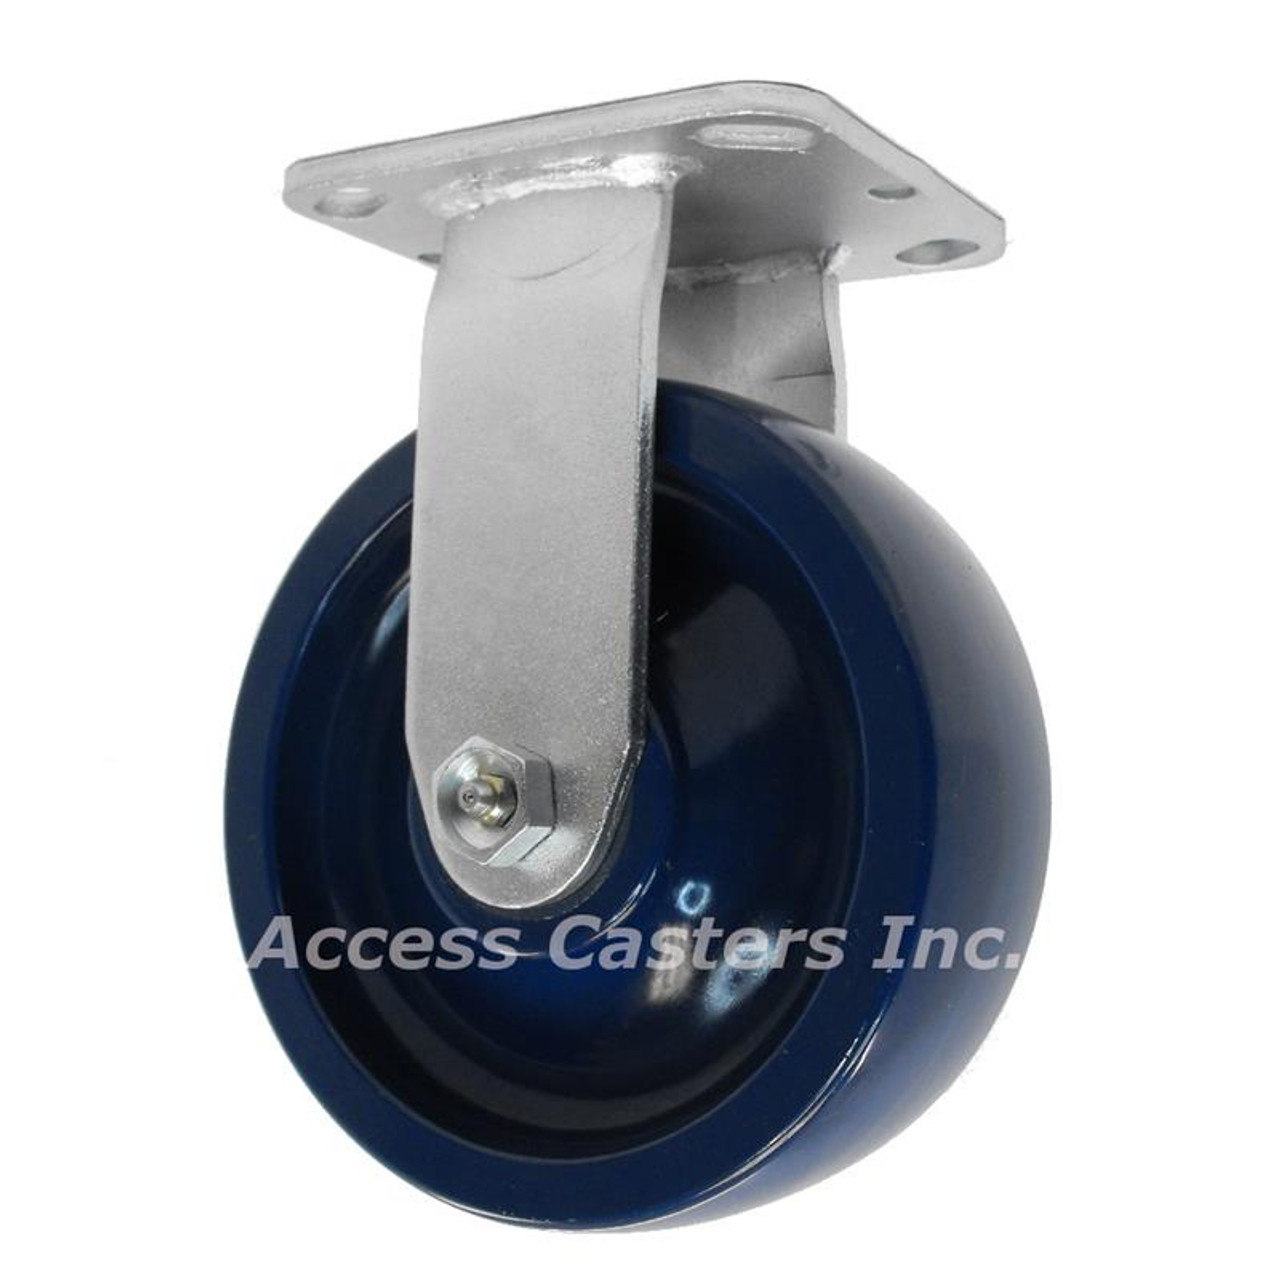 5 inch rigid caster with solid blue polyurethane wheel